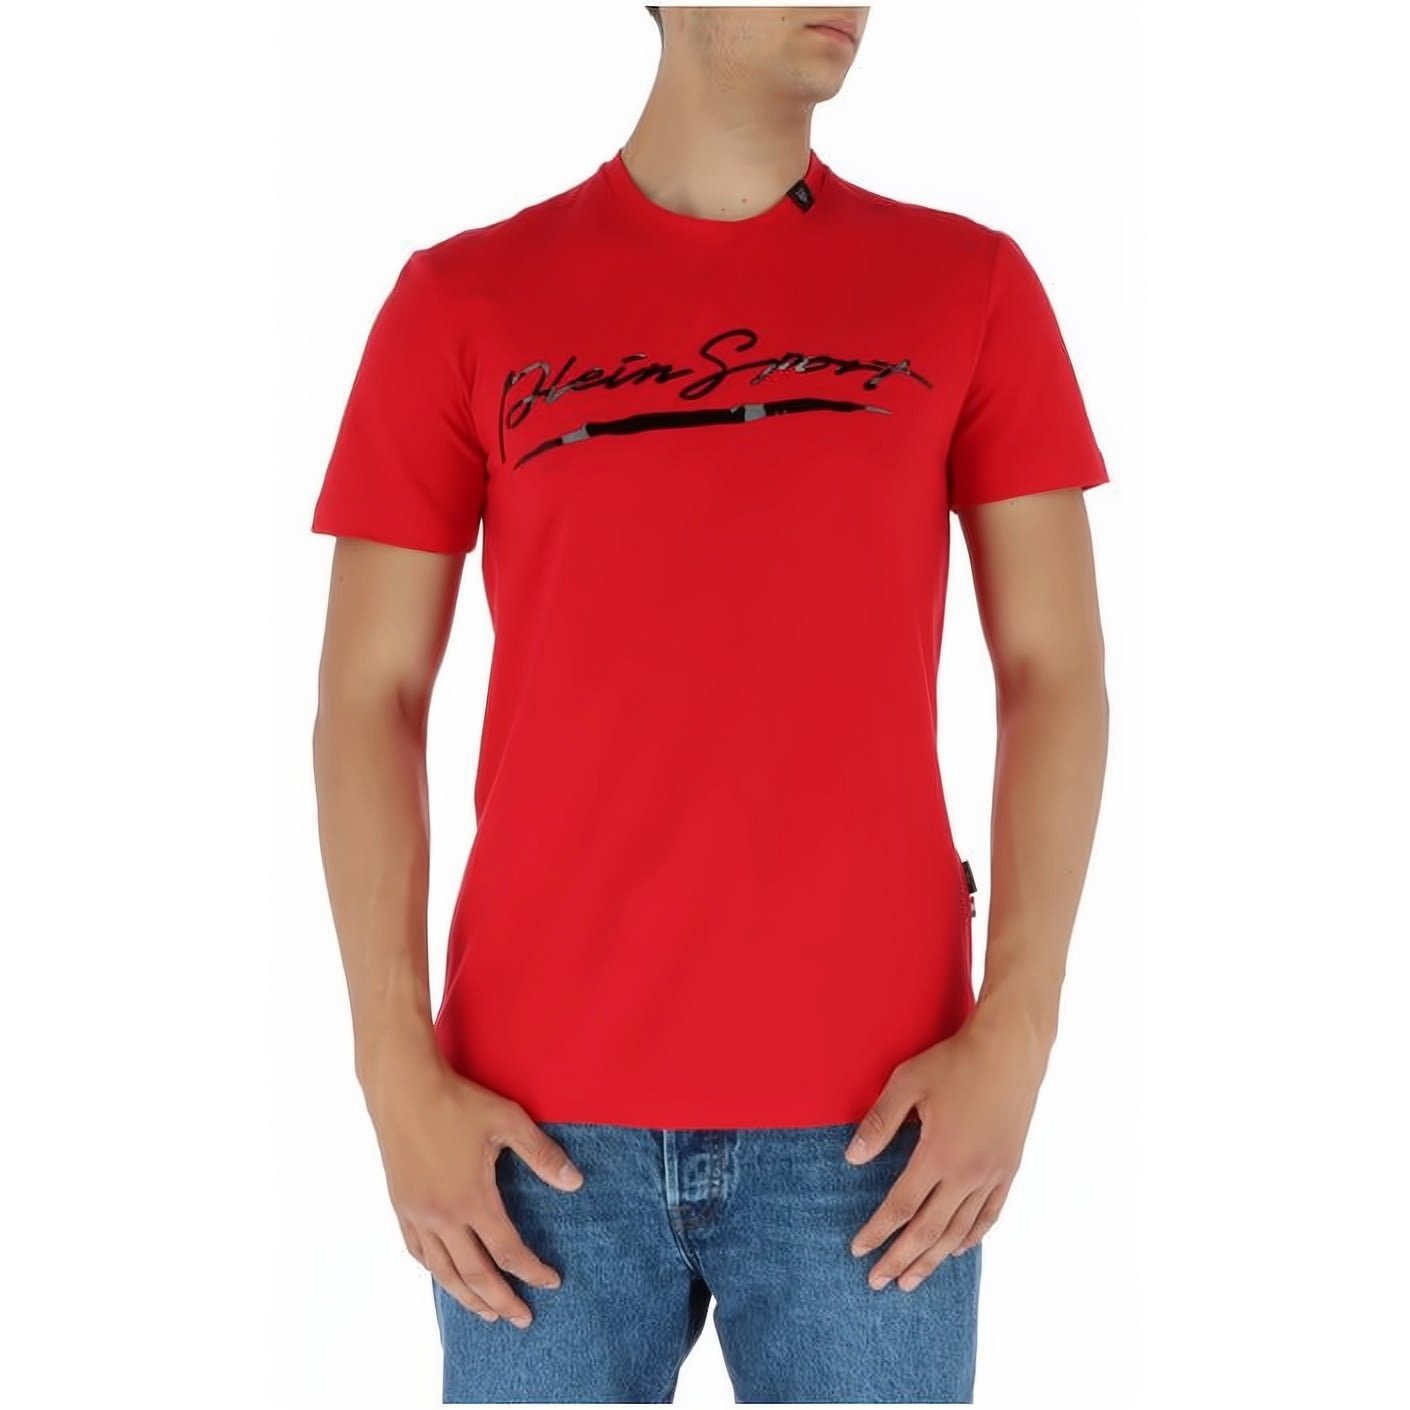 PLEIN SPORT T-Shirt ROUND NECK Stylischer Look, hoher Tragekomfort, vielfältige Farbauswahl